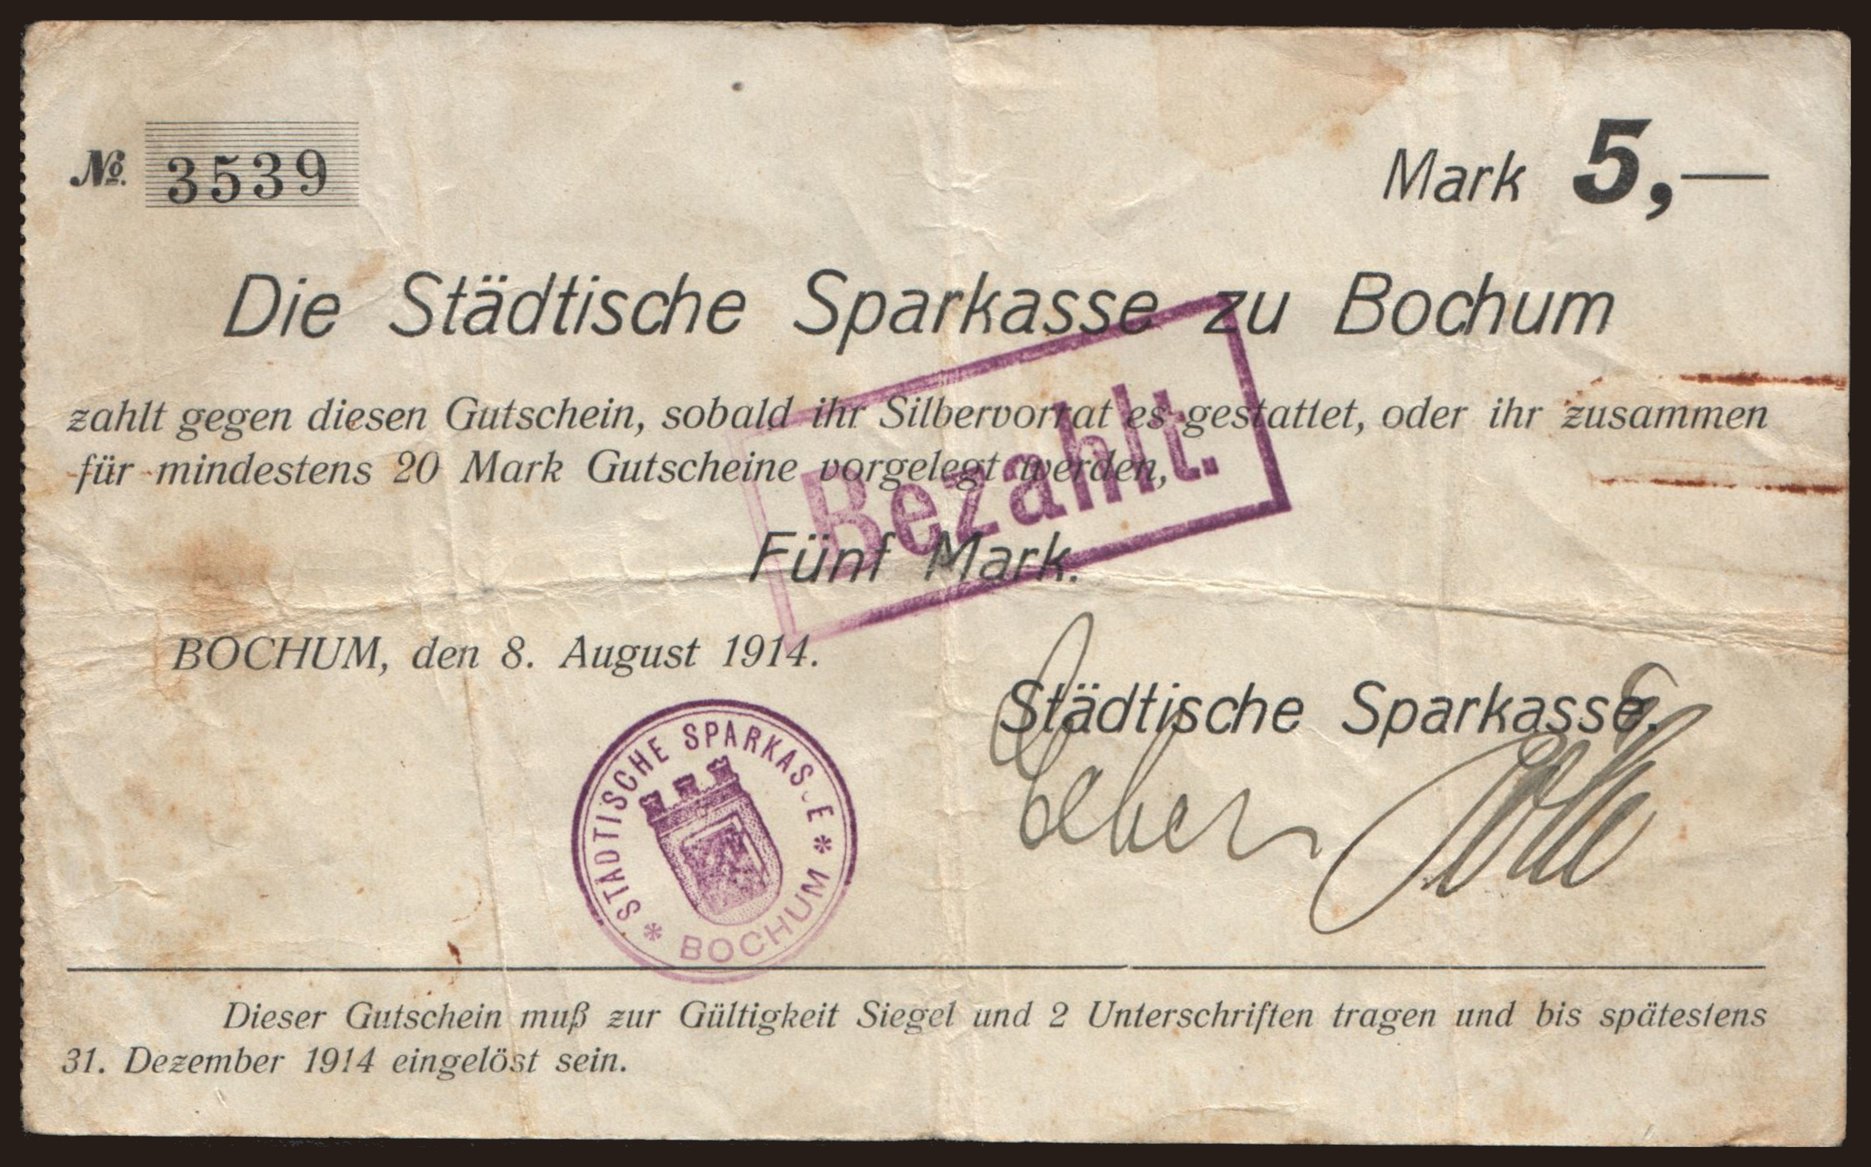 Bochum/ Städtische Sparkasse, 5 Mark, 1914